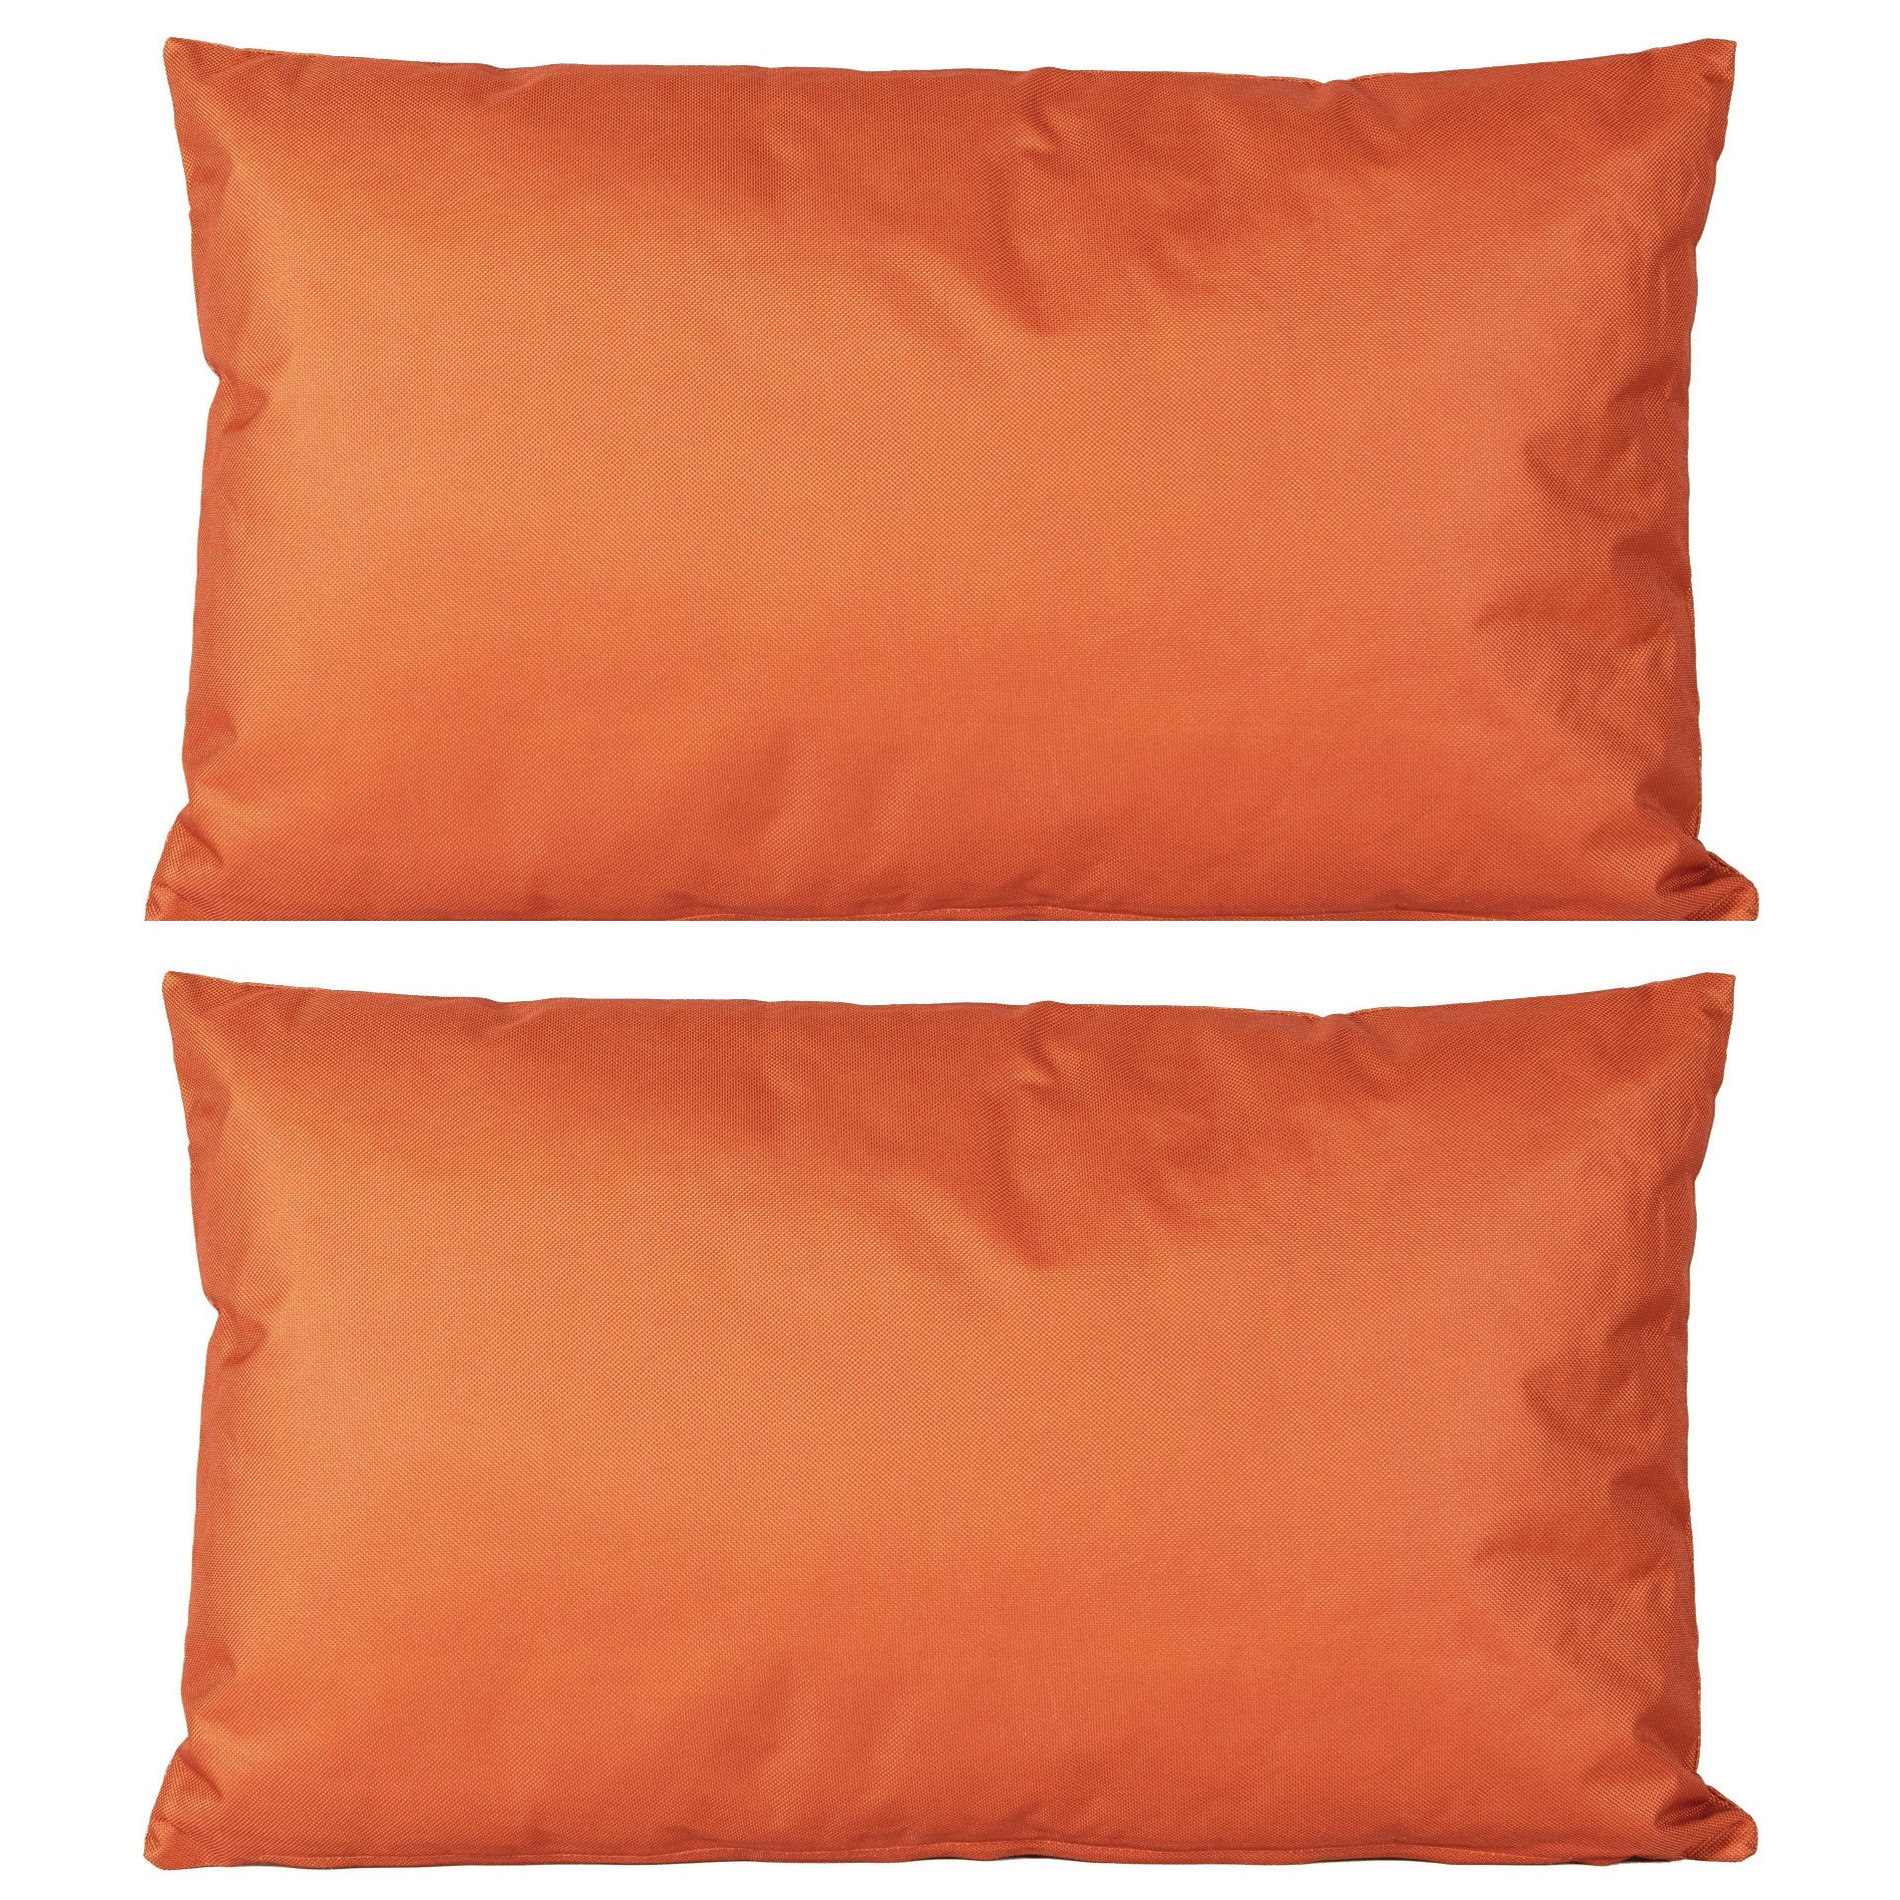 4x Bank-sier kussens voor binnen en buiten in de kleur oranje 30 x 50 cm